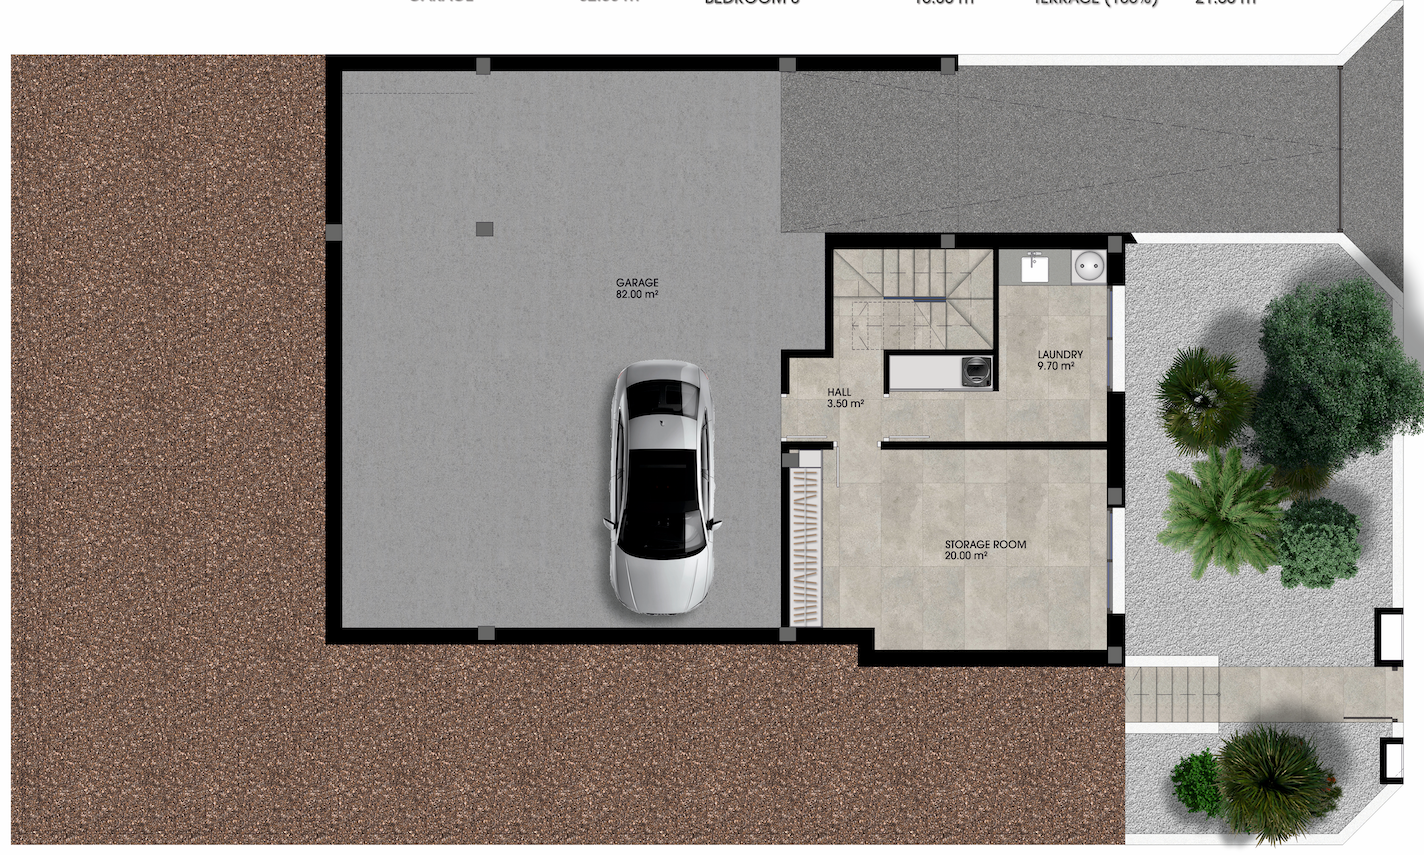 Floor plan for Villa ref 4273 for sale in LOS ALCAZARES Spain - Murcia Dreams